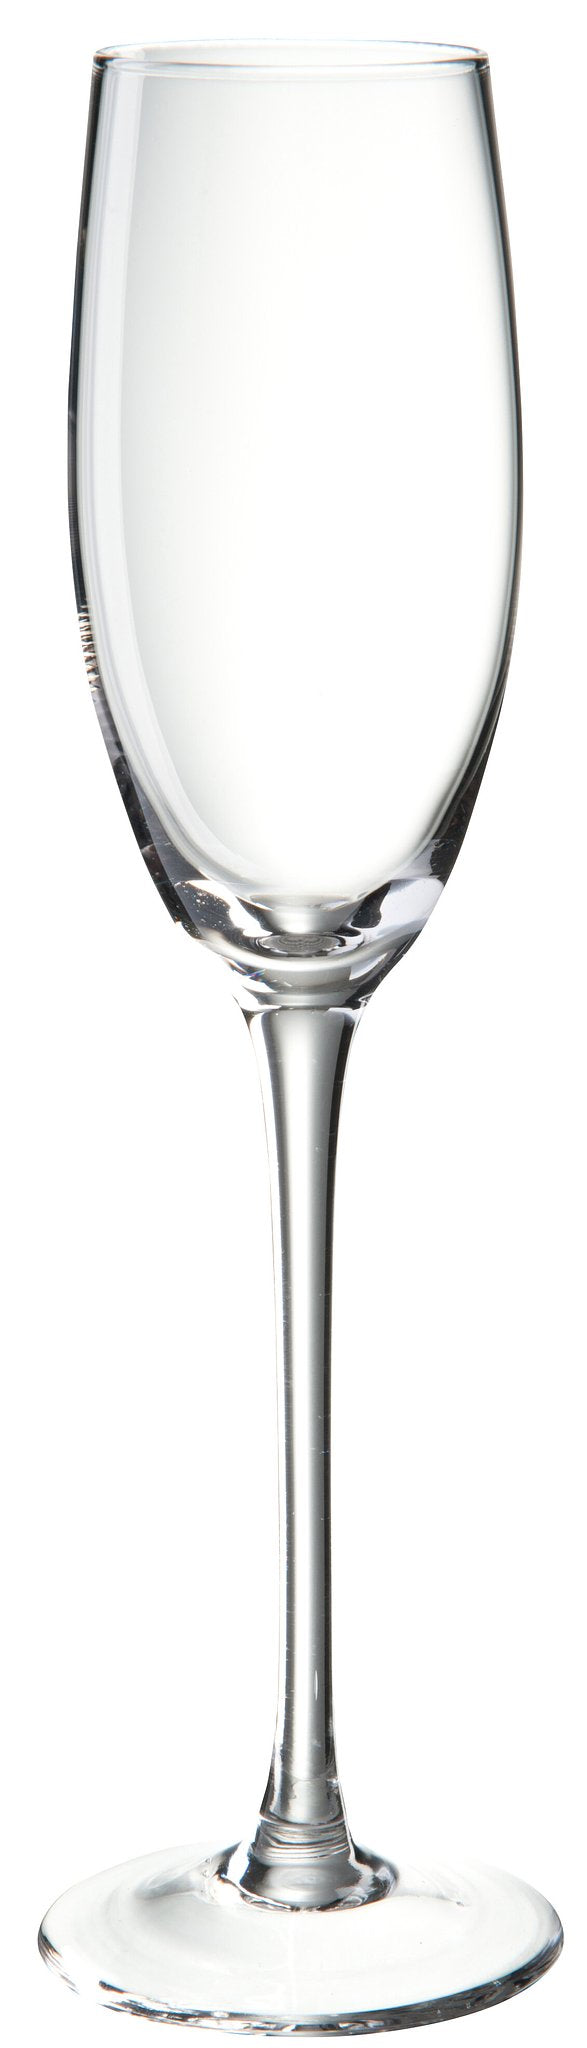 J-Line fluteglas - glas - 6 stuks